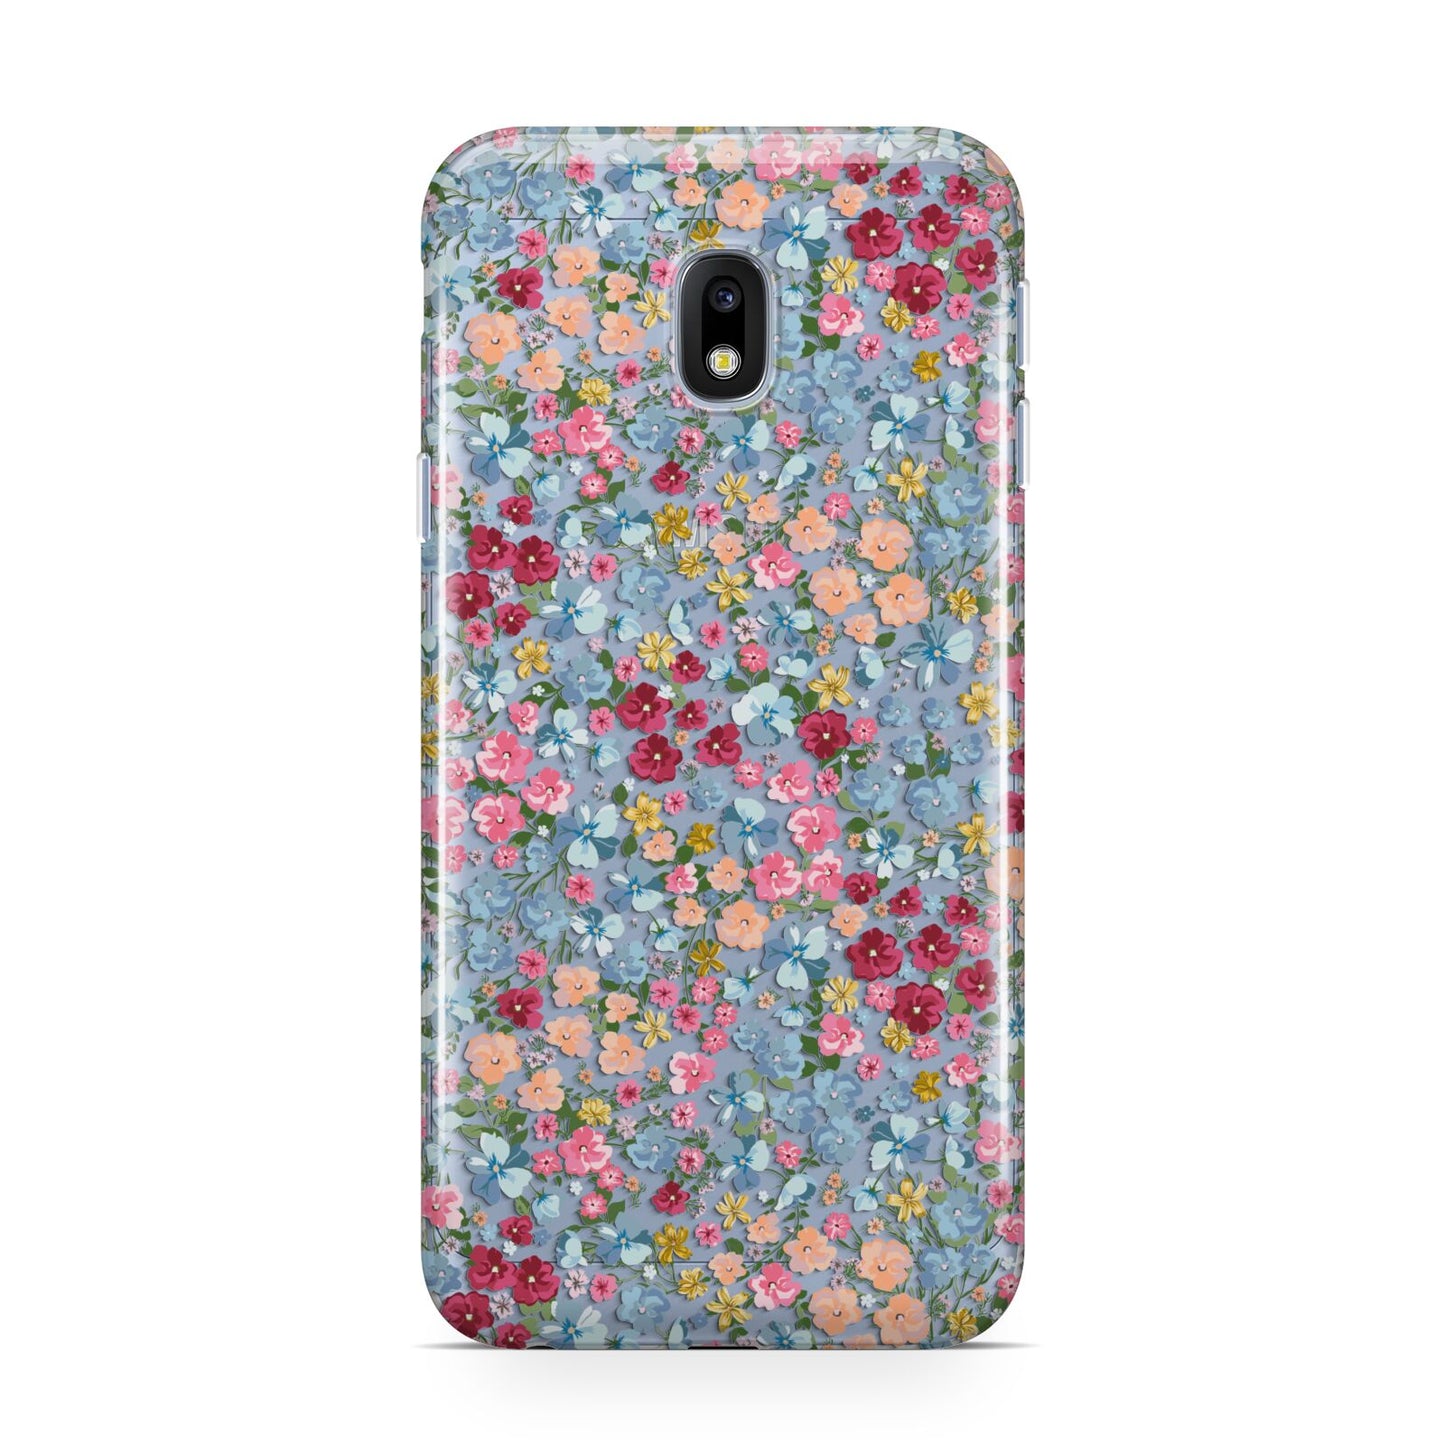 Floral Meadow Samsung Galaxy J3 2017 Case